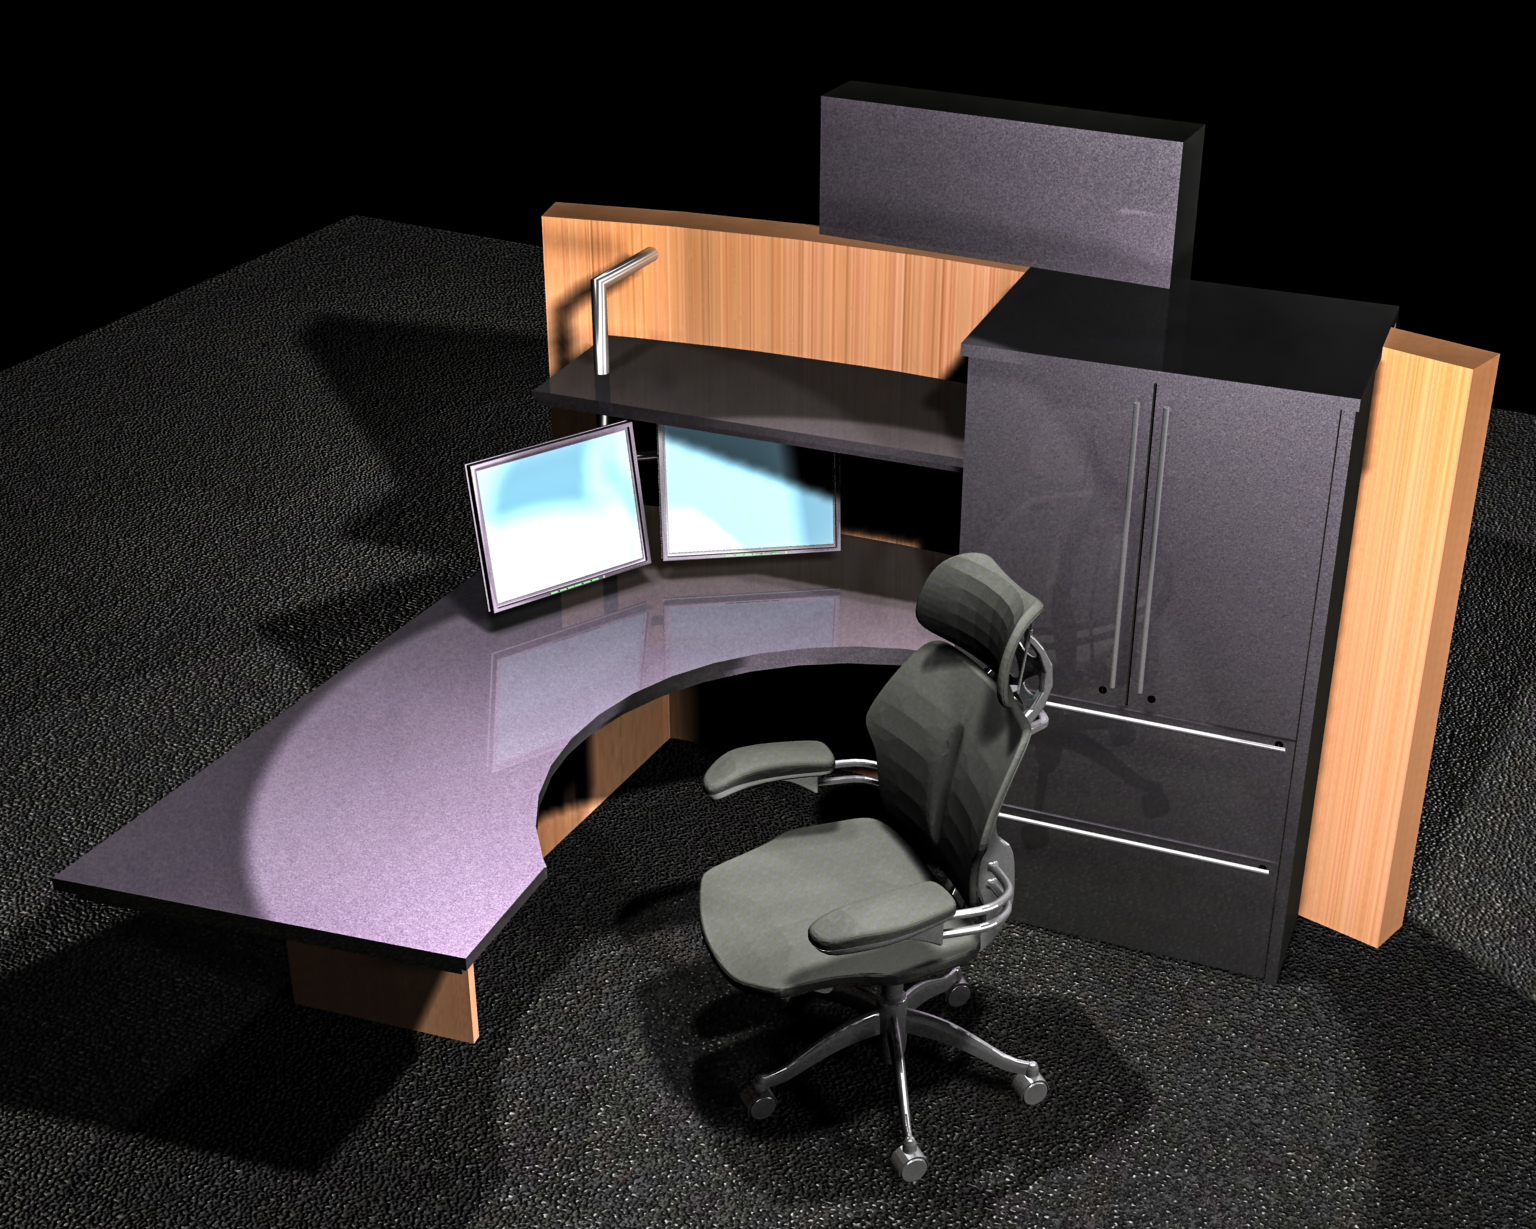 S.F. Bank: Model: Platform desk concept